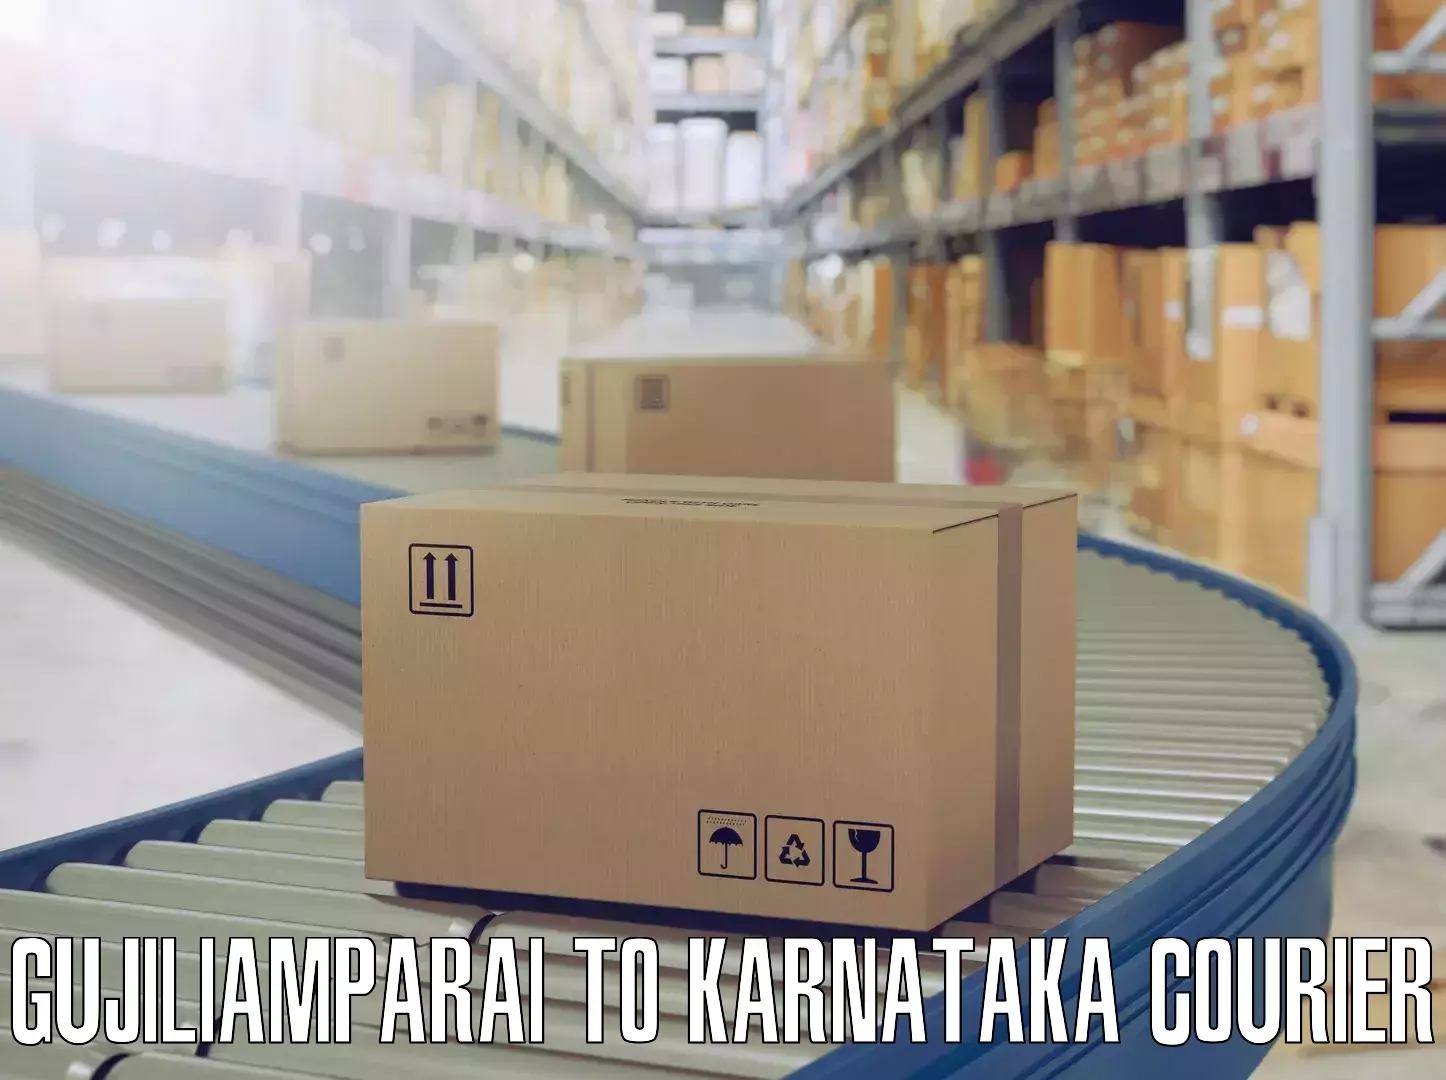 Furniture logistics in Gujiliamparai to Bagaluru